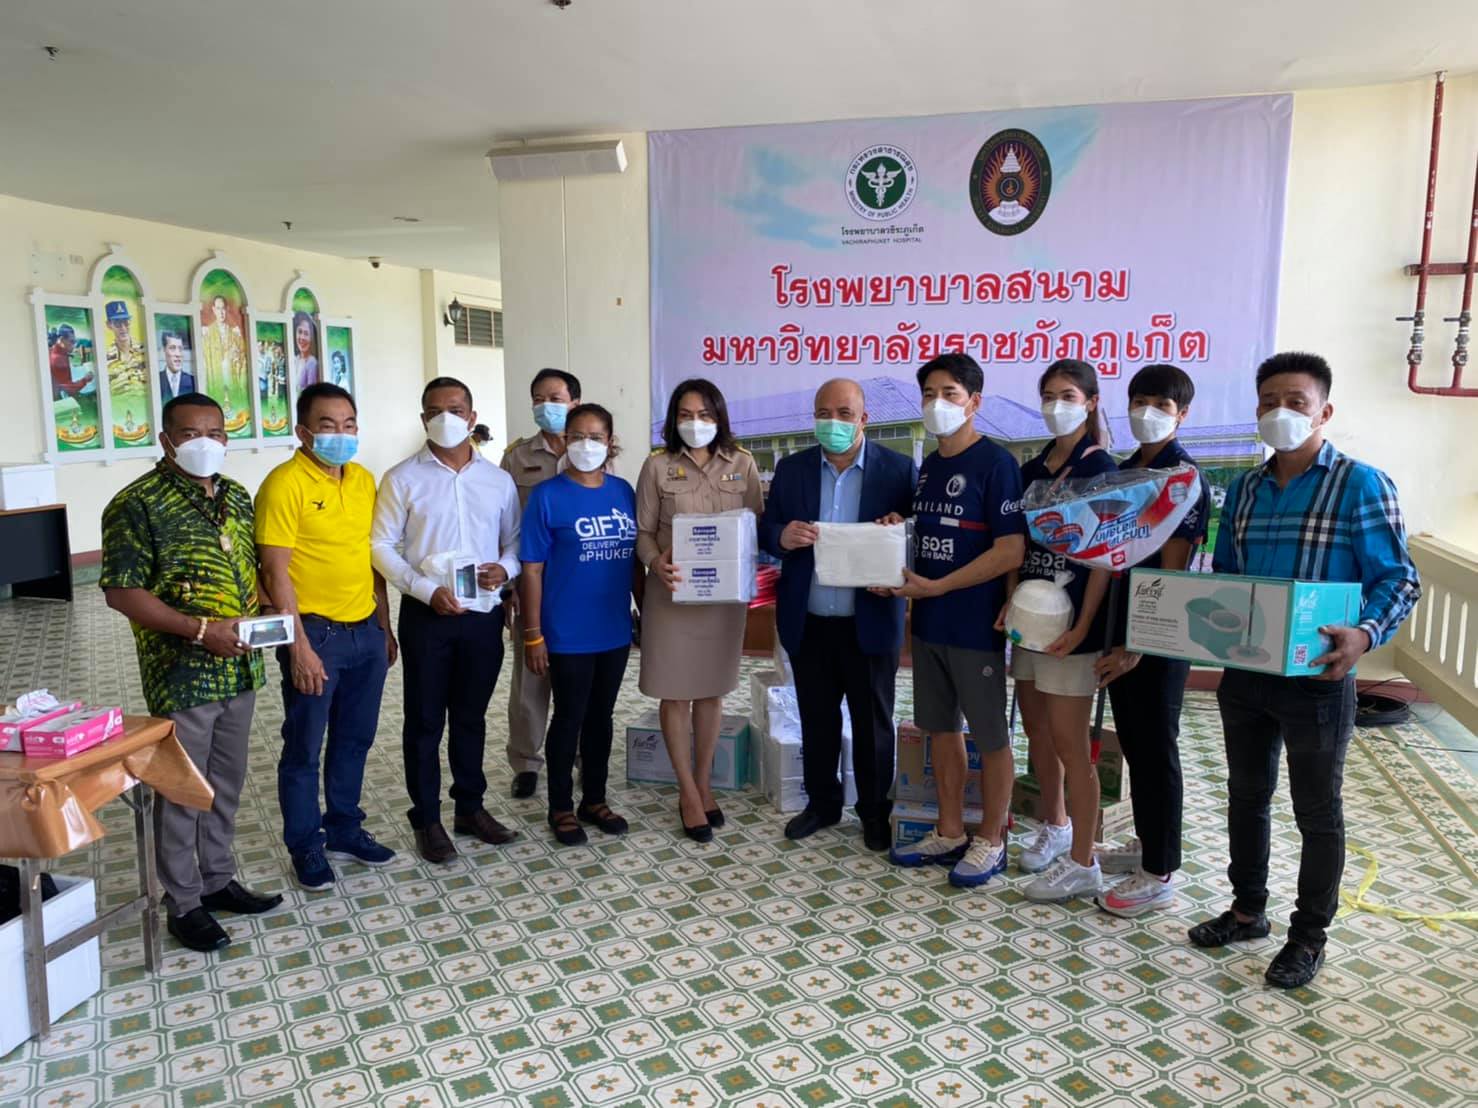 Nữ VĐV Thái Lan tham gia tặng quà, giúp đỡ những người dân Thái Lan chịu ảnh hưởng bởi dịch.